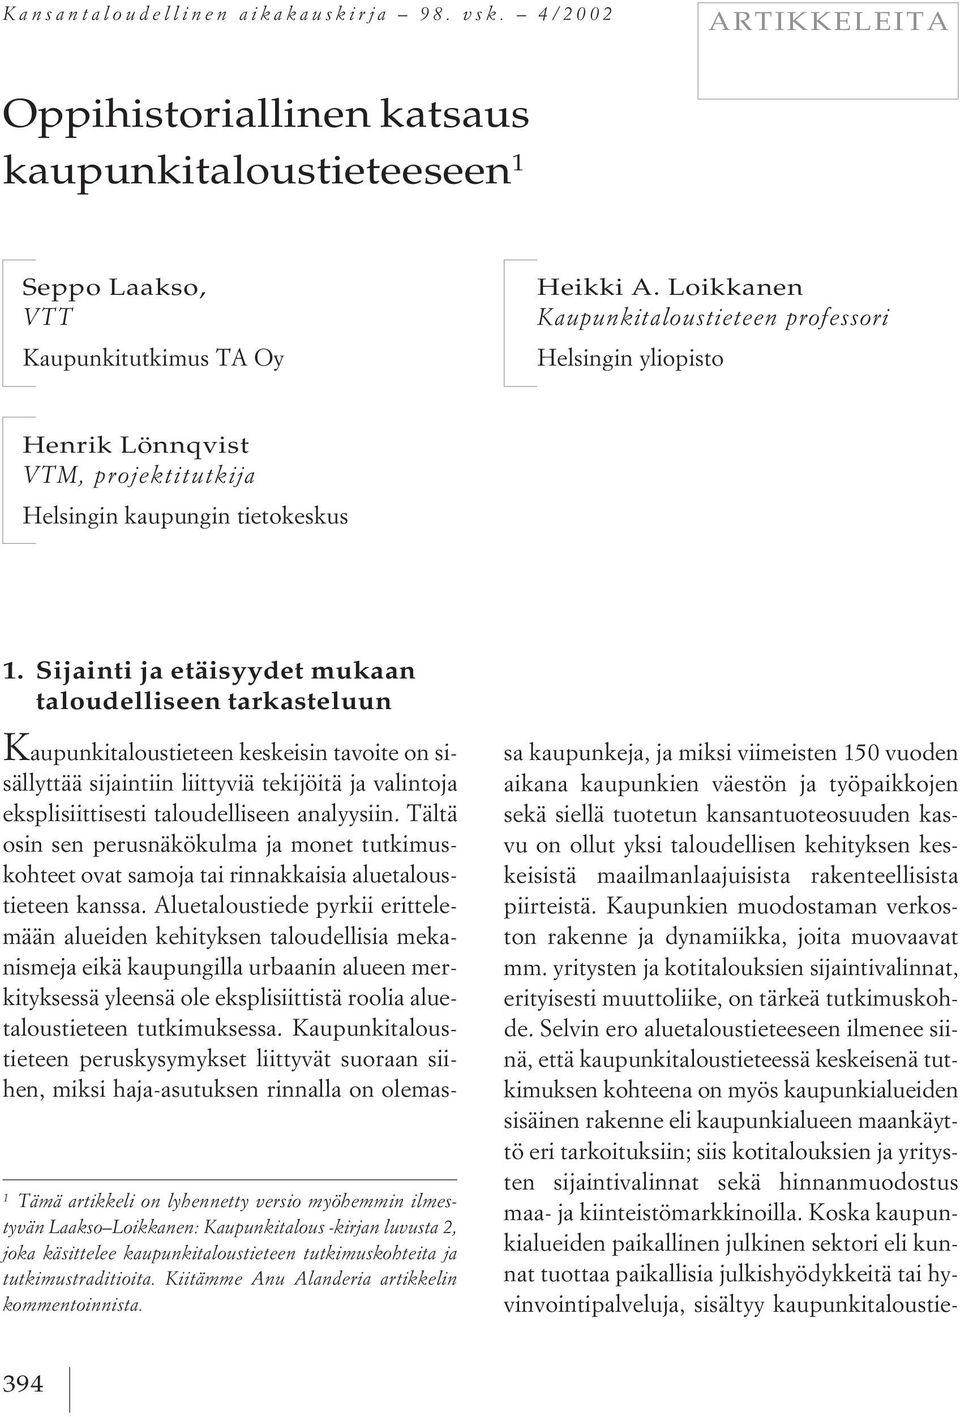 Loikkanen: Kaupunkitalous -kirjan luvusta 2, joka käsittelee kaupunkitaloustieteen tutkimuskohteita ja tutkimustraditioita. Kiitämme Anu Alanderia artikkelin kommentoinnista. 1.